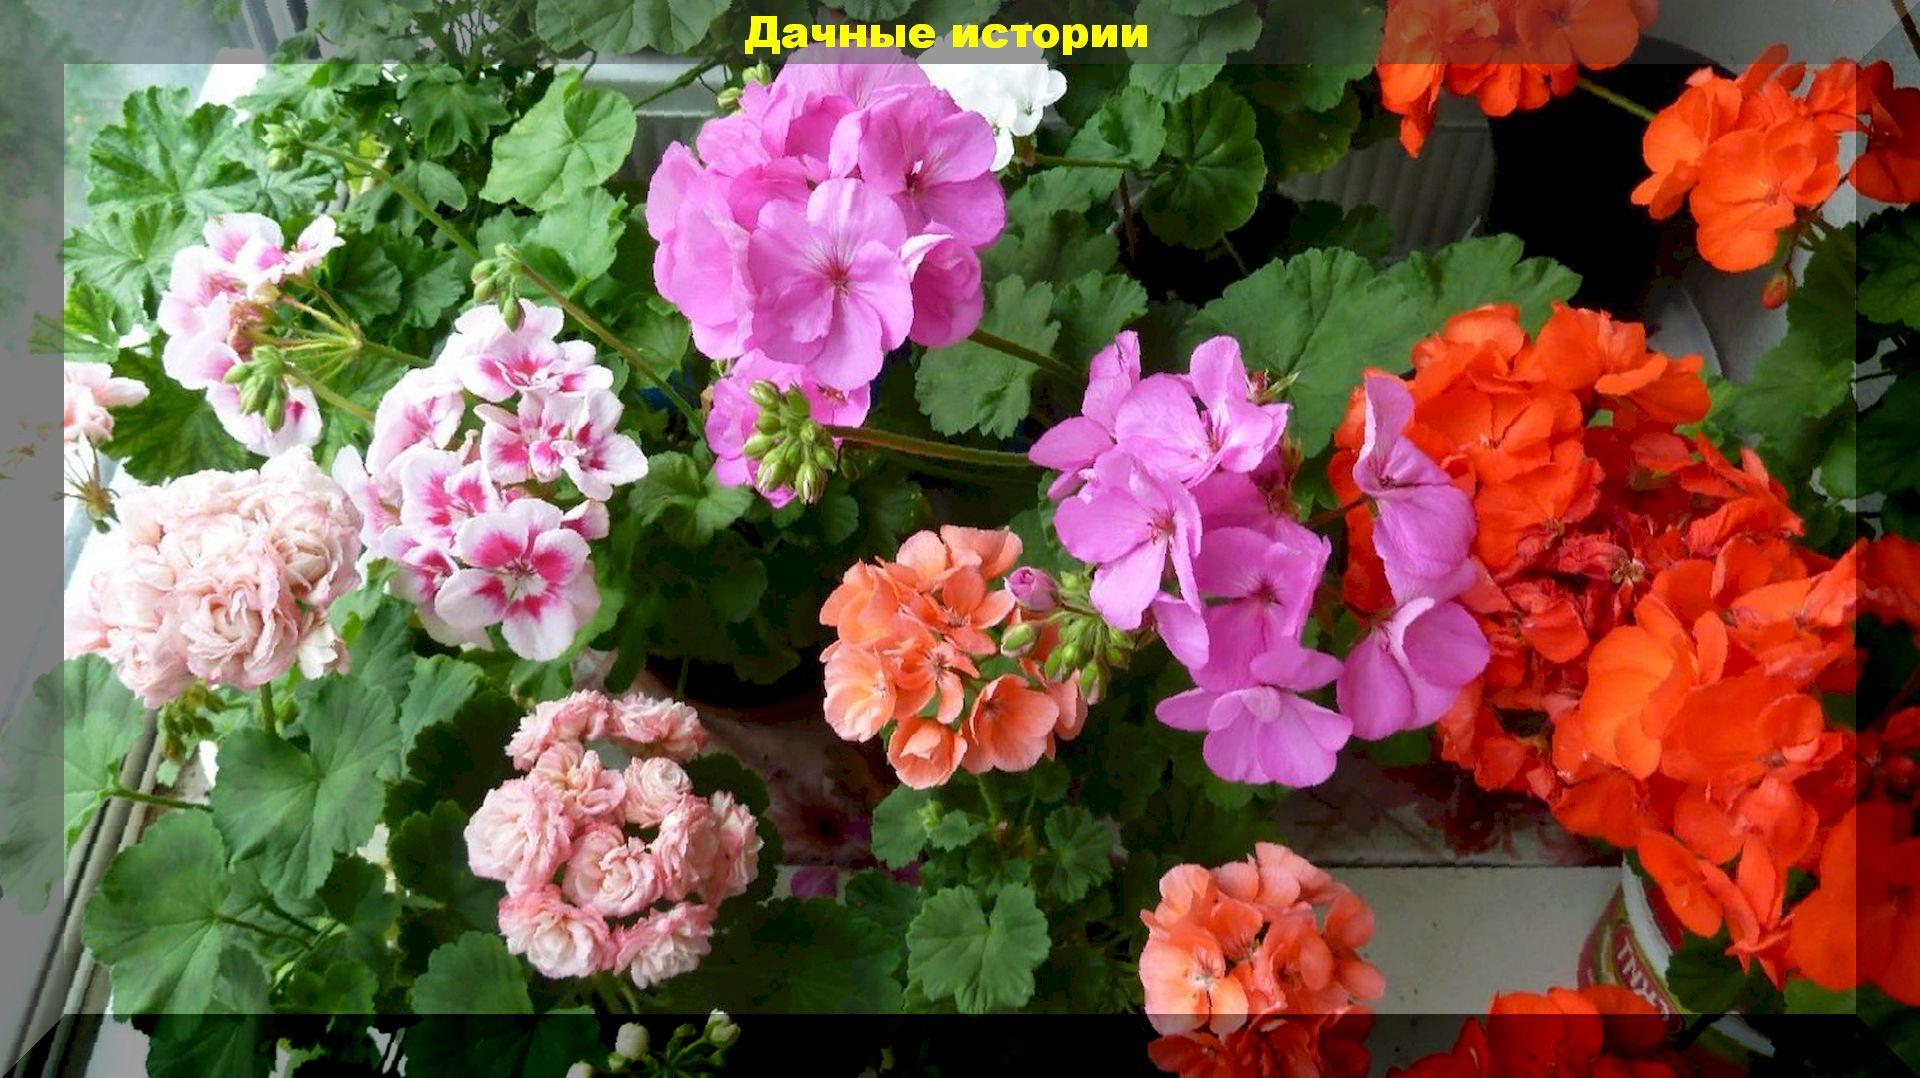 Выращиваем большой и красиво цветущий куст комнатной герани (пеларгонии). Практические советы цветоводов